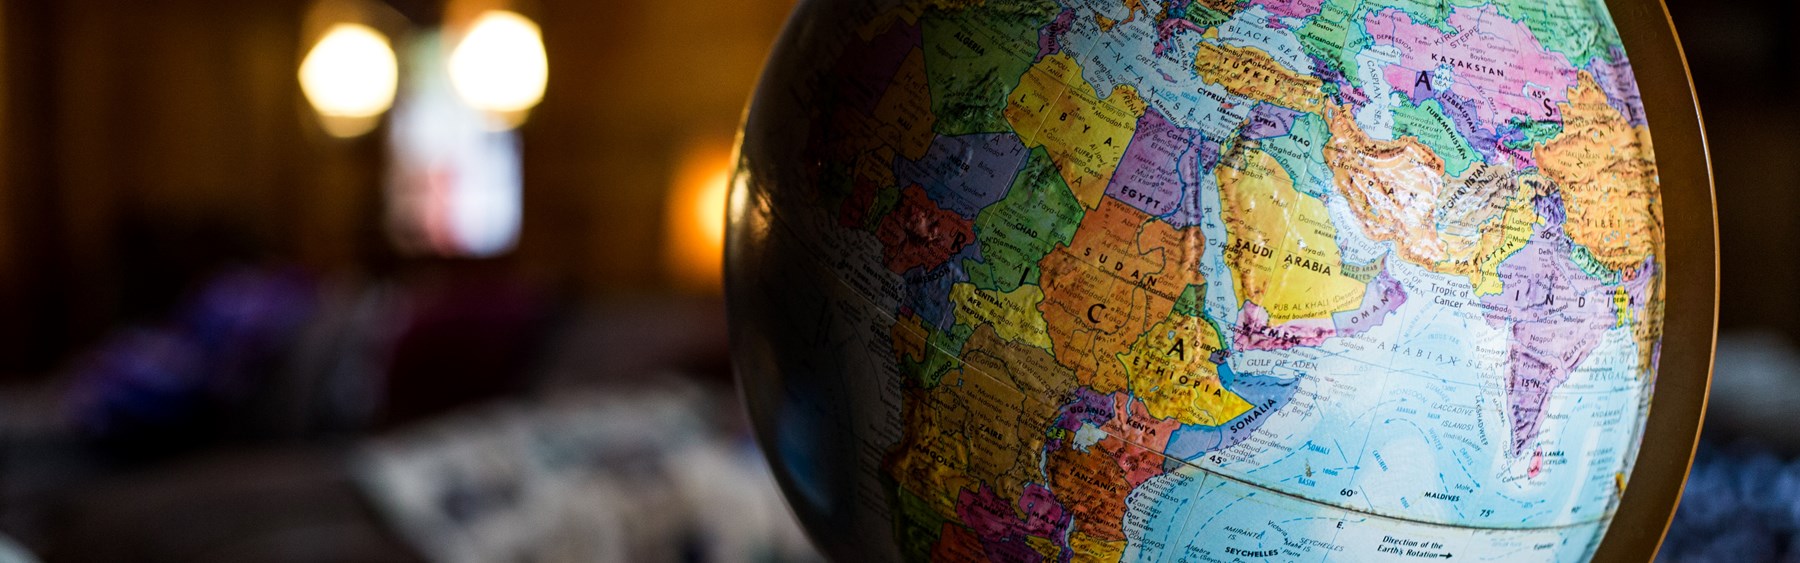 Globus, der står på et bord. Globussen viser mest Afrika.